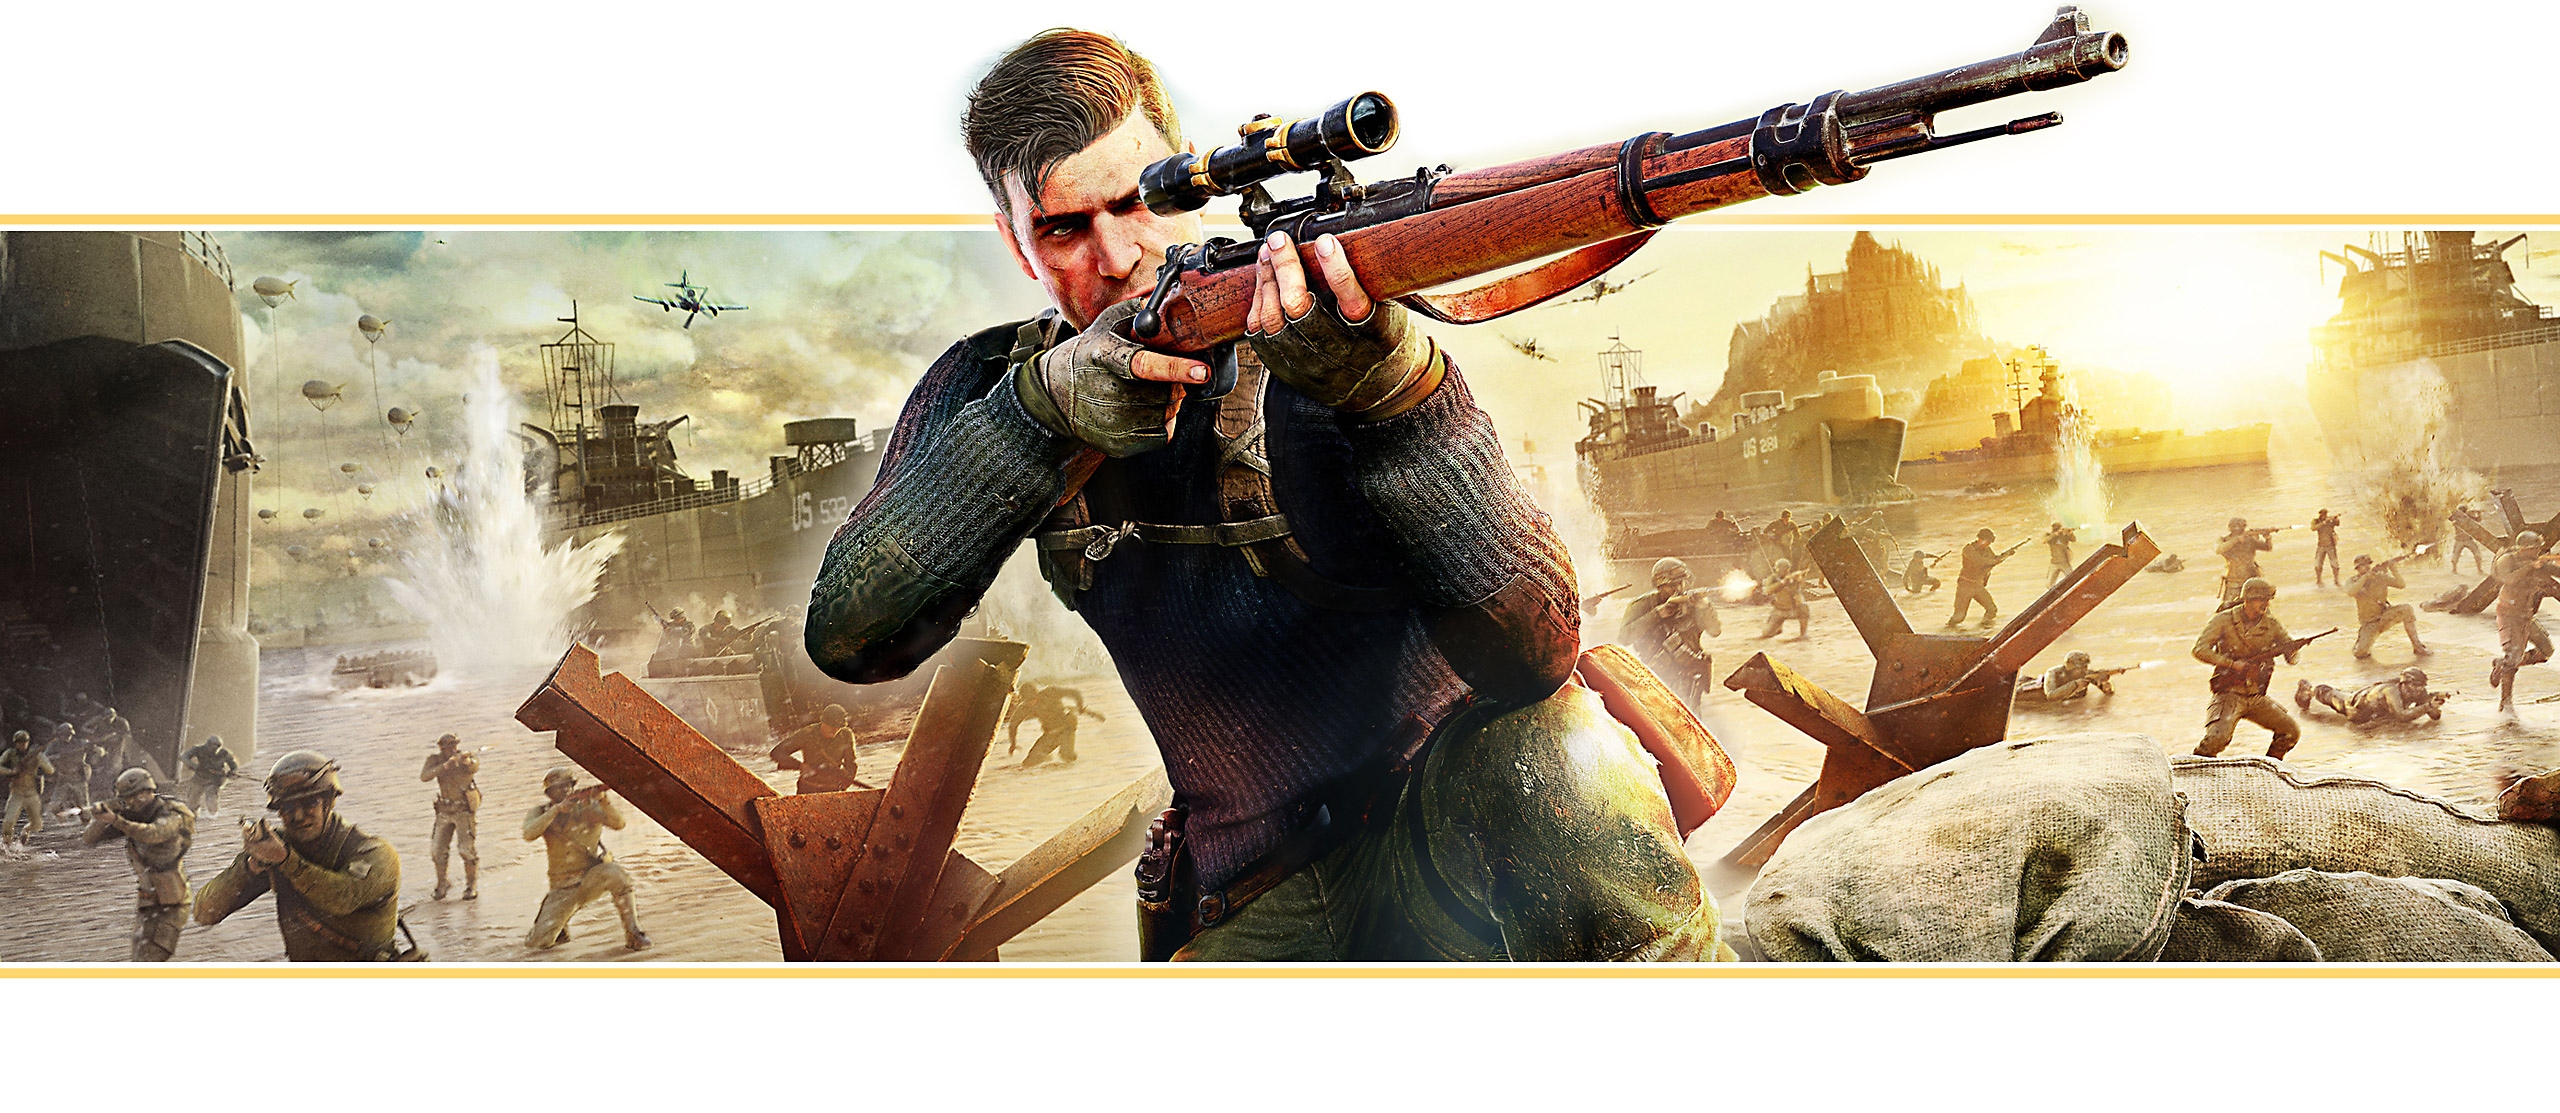 Sniper Elite 5 – banner från spelet; huvudpersonen siktar med ett prickskyttegevär